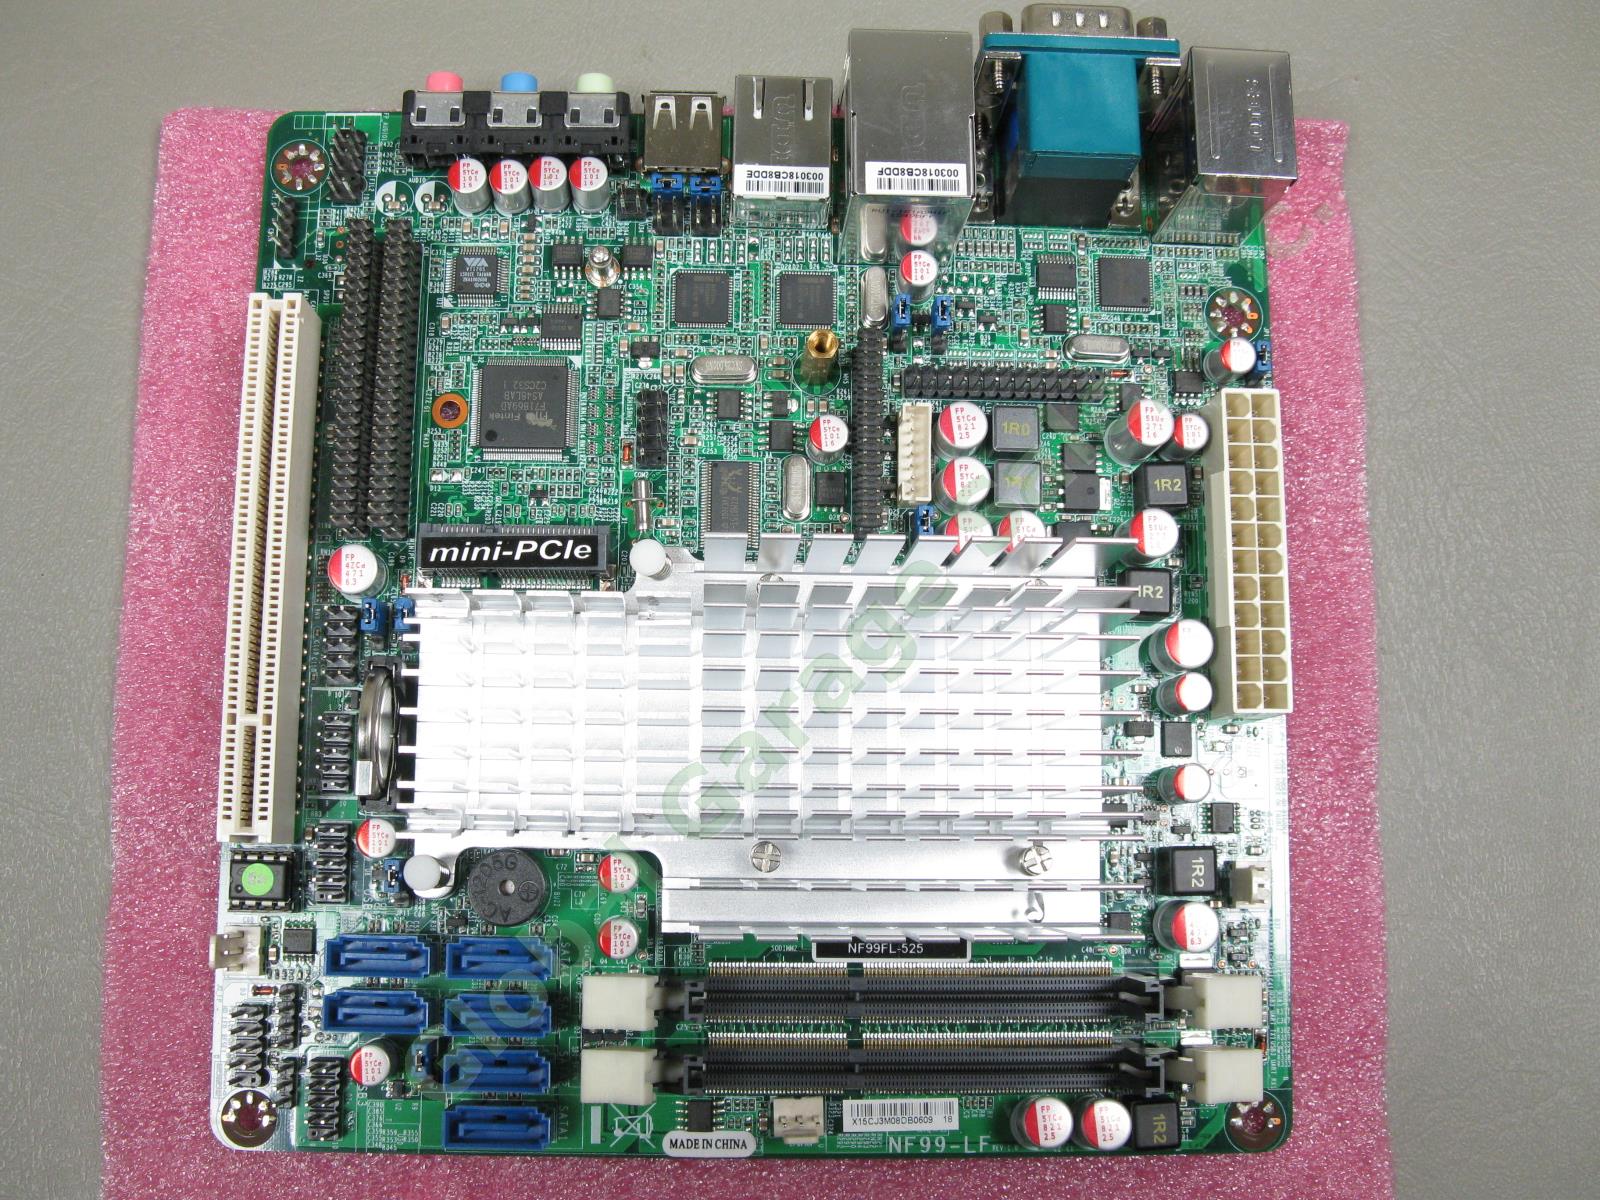 Jetway NF99FL-525 Intel Atom D525 Fanless 1.8GHz Networking Mini-ITX Motherboard 1